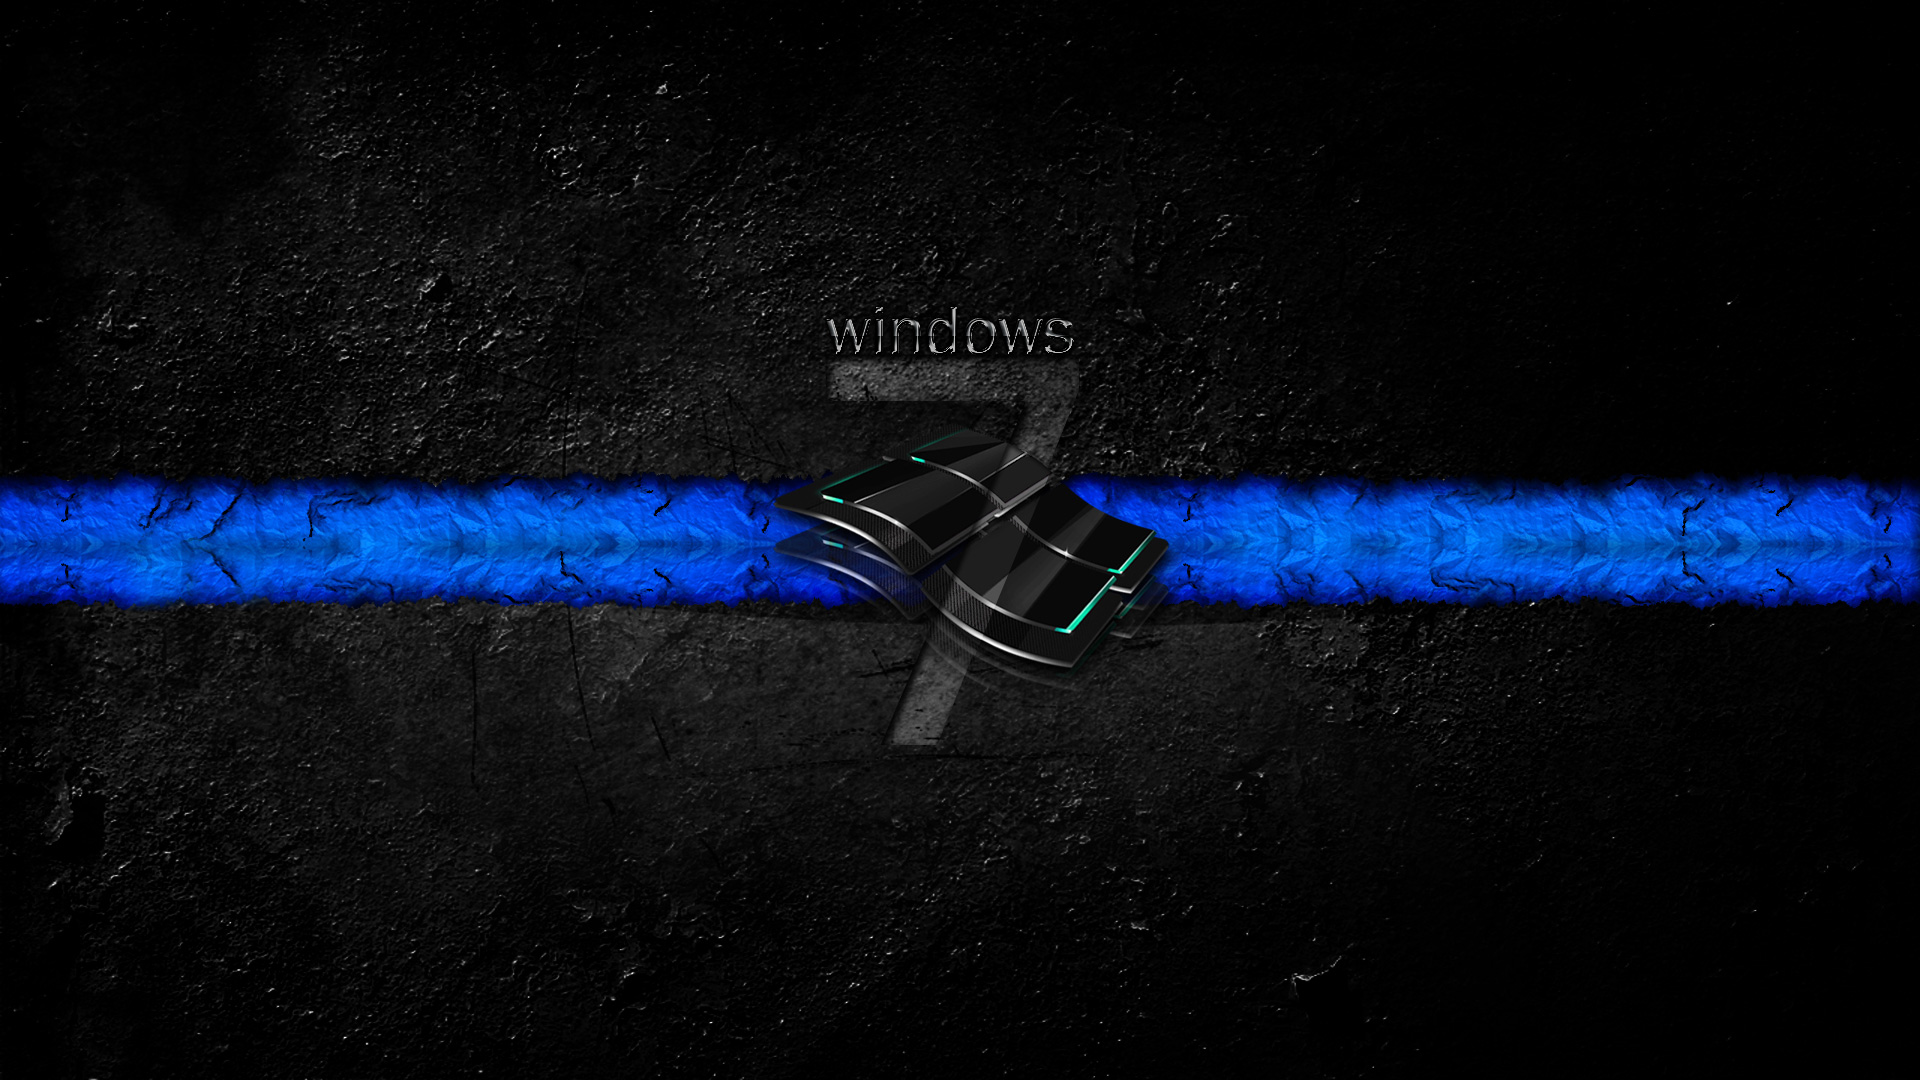 Hình nền Windows 7 đen: Cùng đắm mình trong không gian hoàn toàn đen để cảm nhận vẻ đẹp mạnh mẽ và hiện đại của hình nền Windows 7 đen.